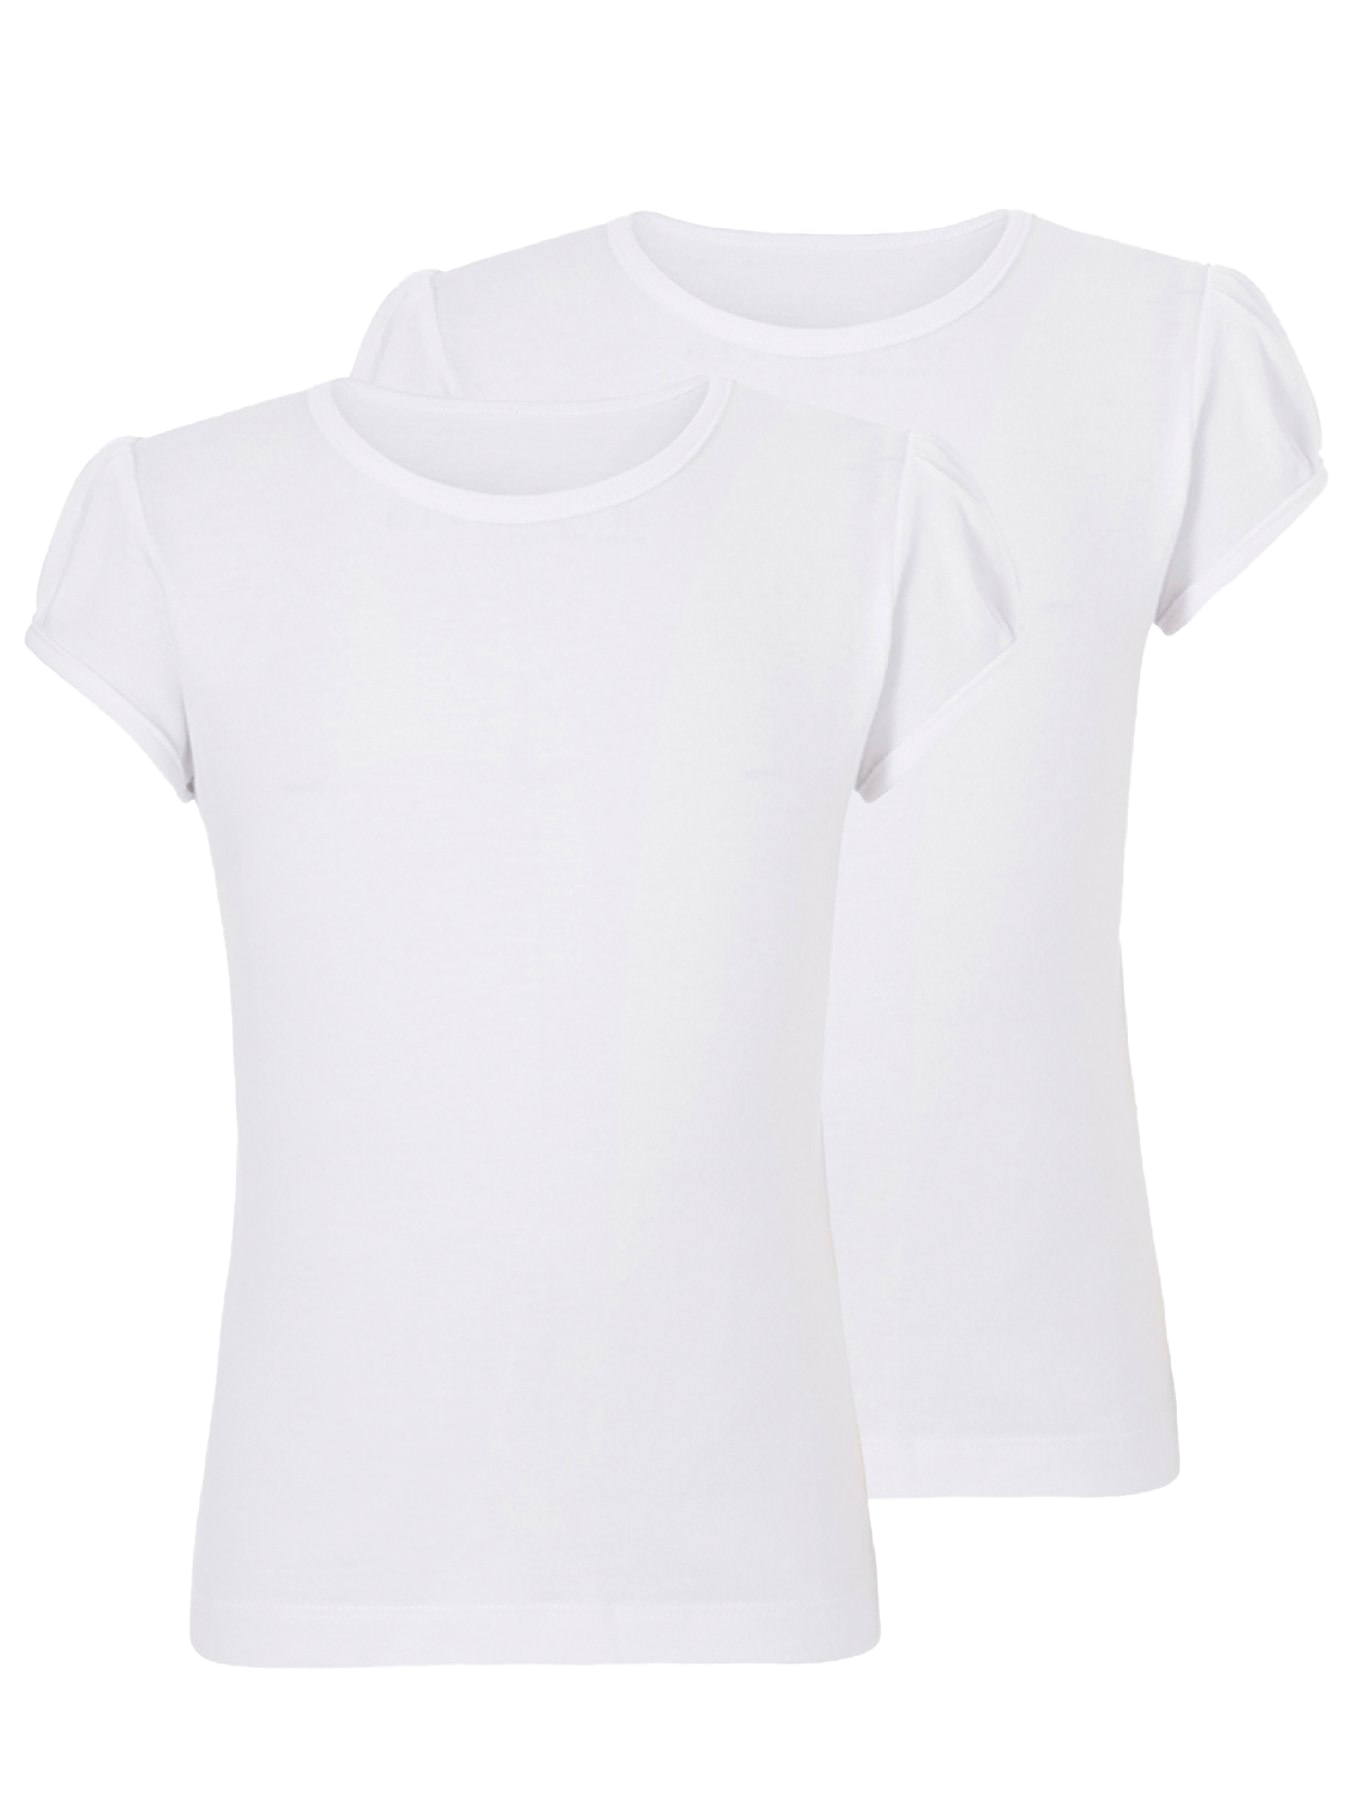 Einfaches weißes T-Shirt PNG-Bild Herunterladen